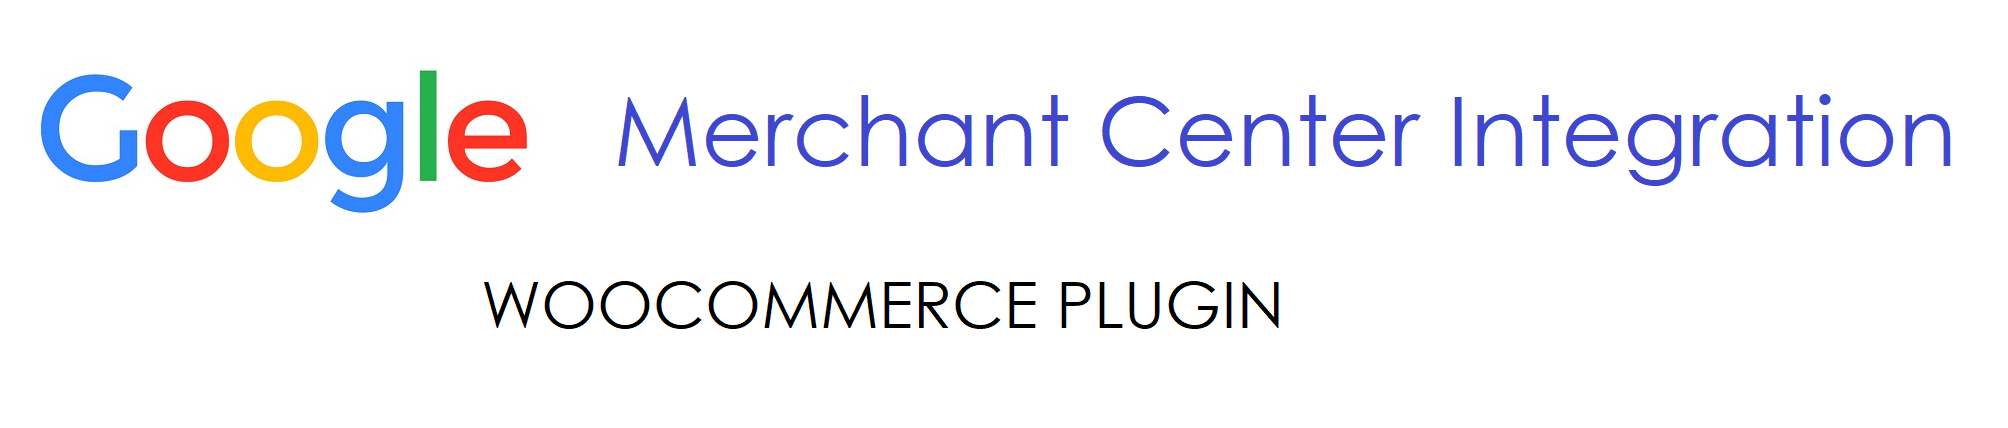 Google Merchant Center Integration